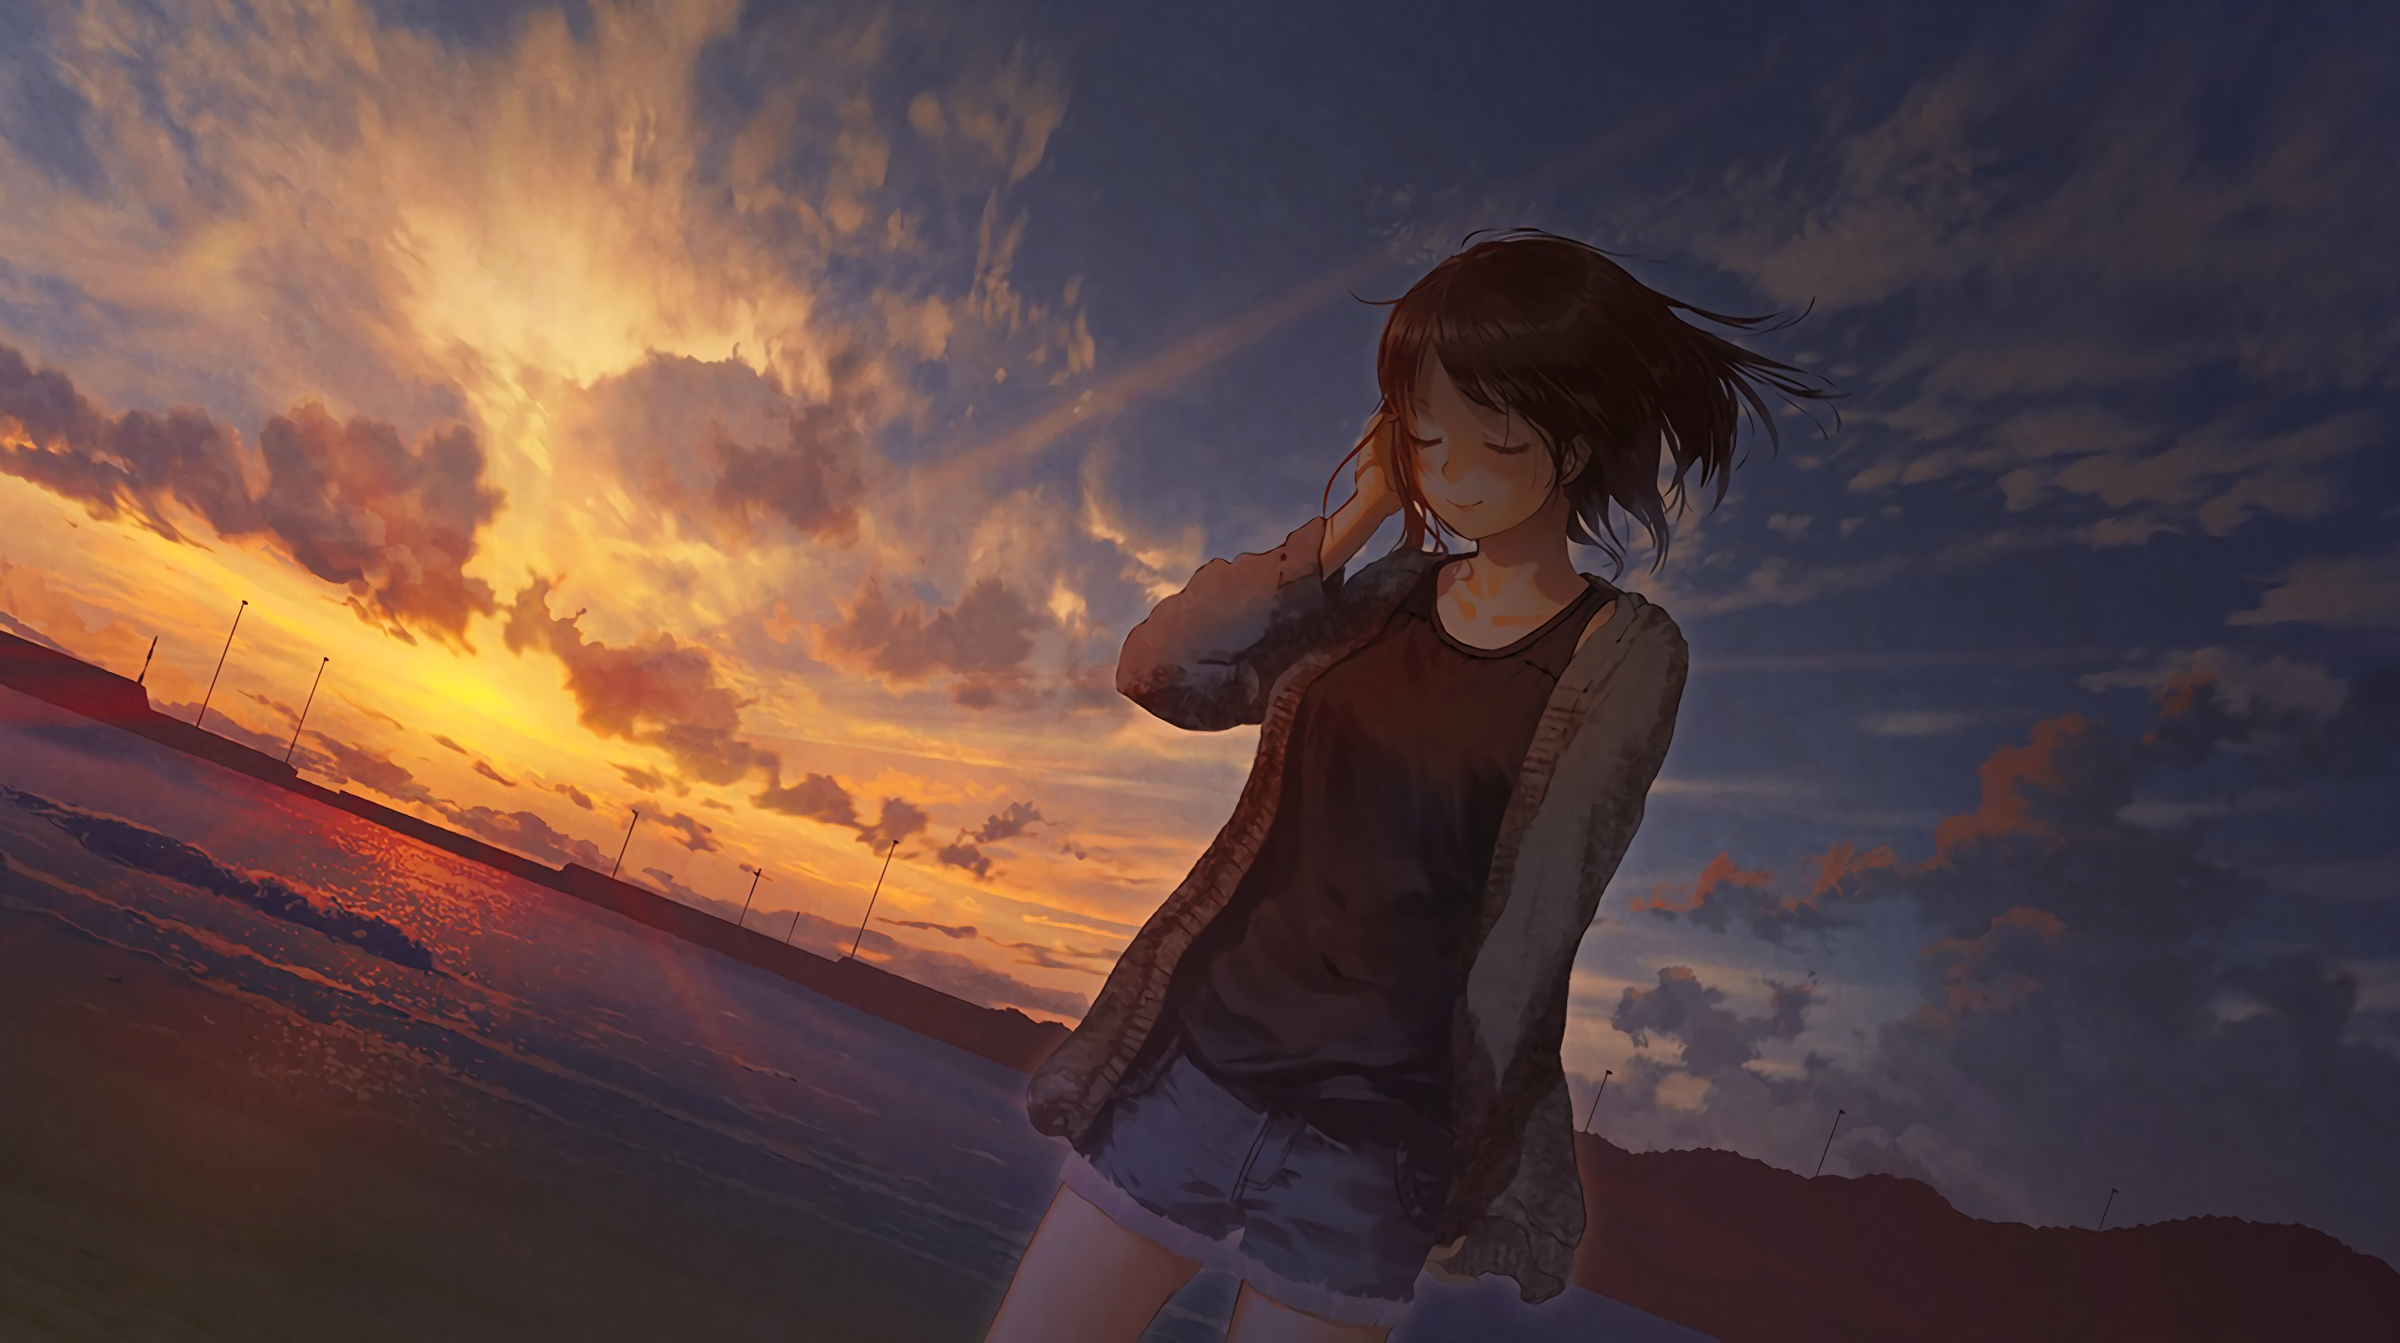 Anime 2400x1343 beach sunset anime girls anime sunlight sky outdoors